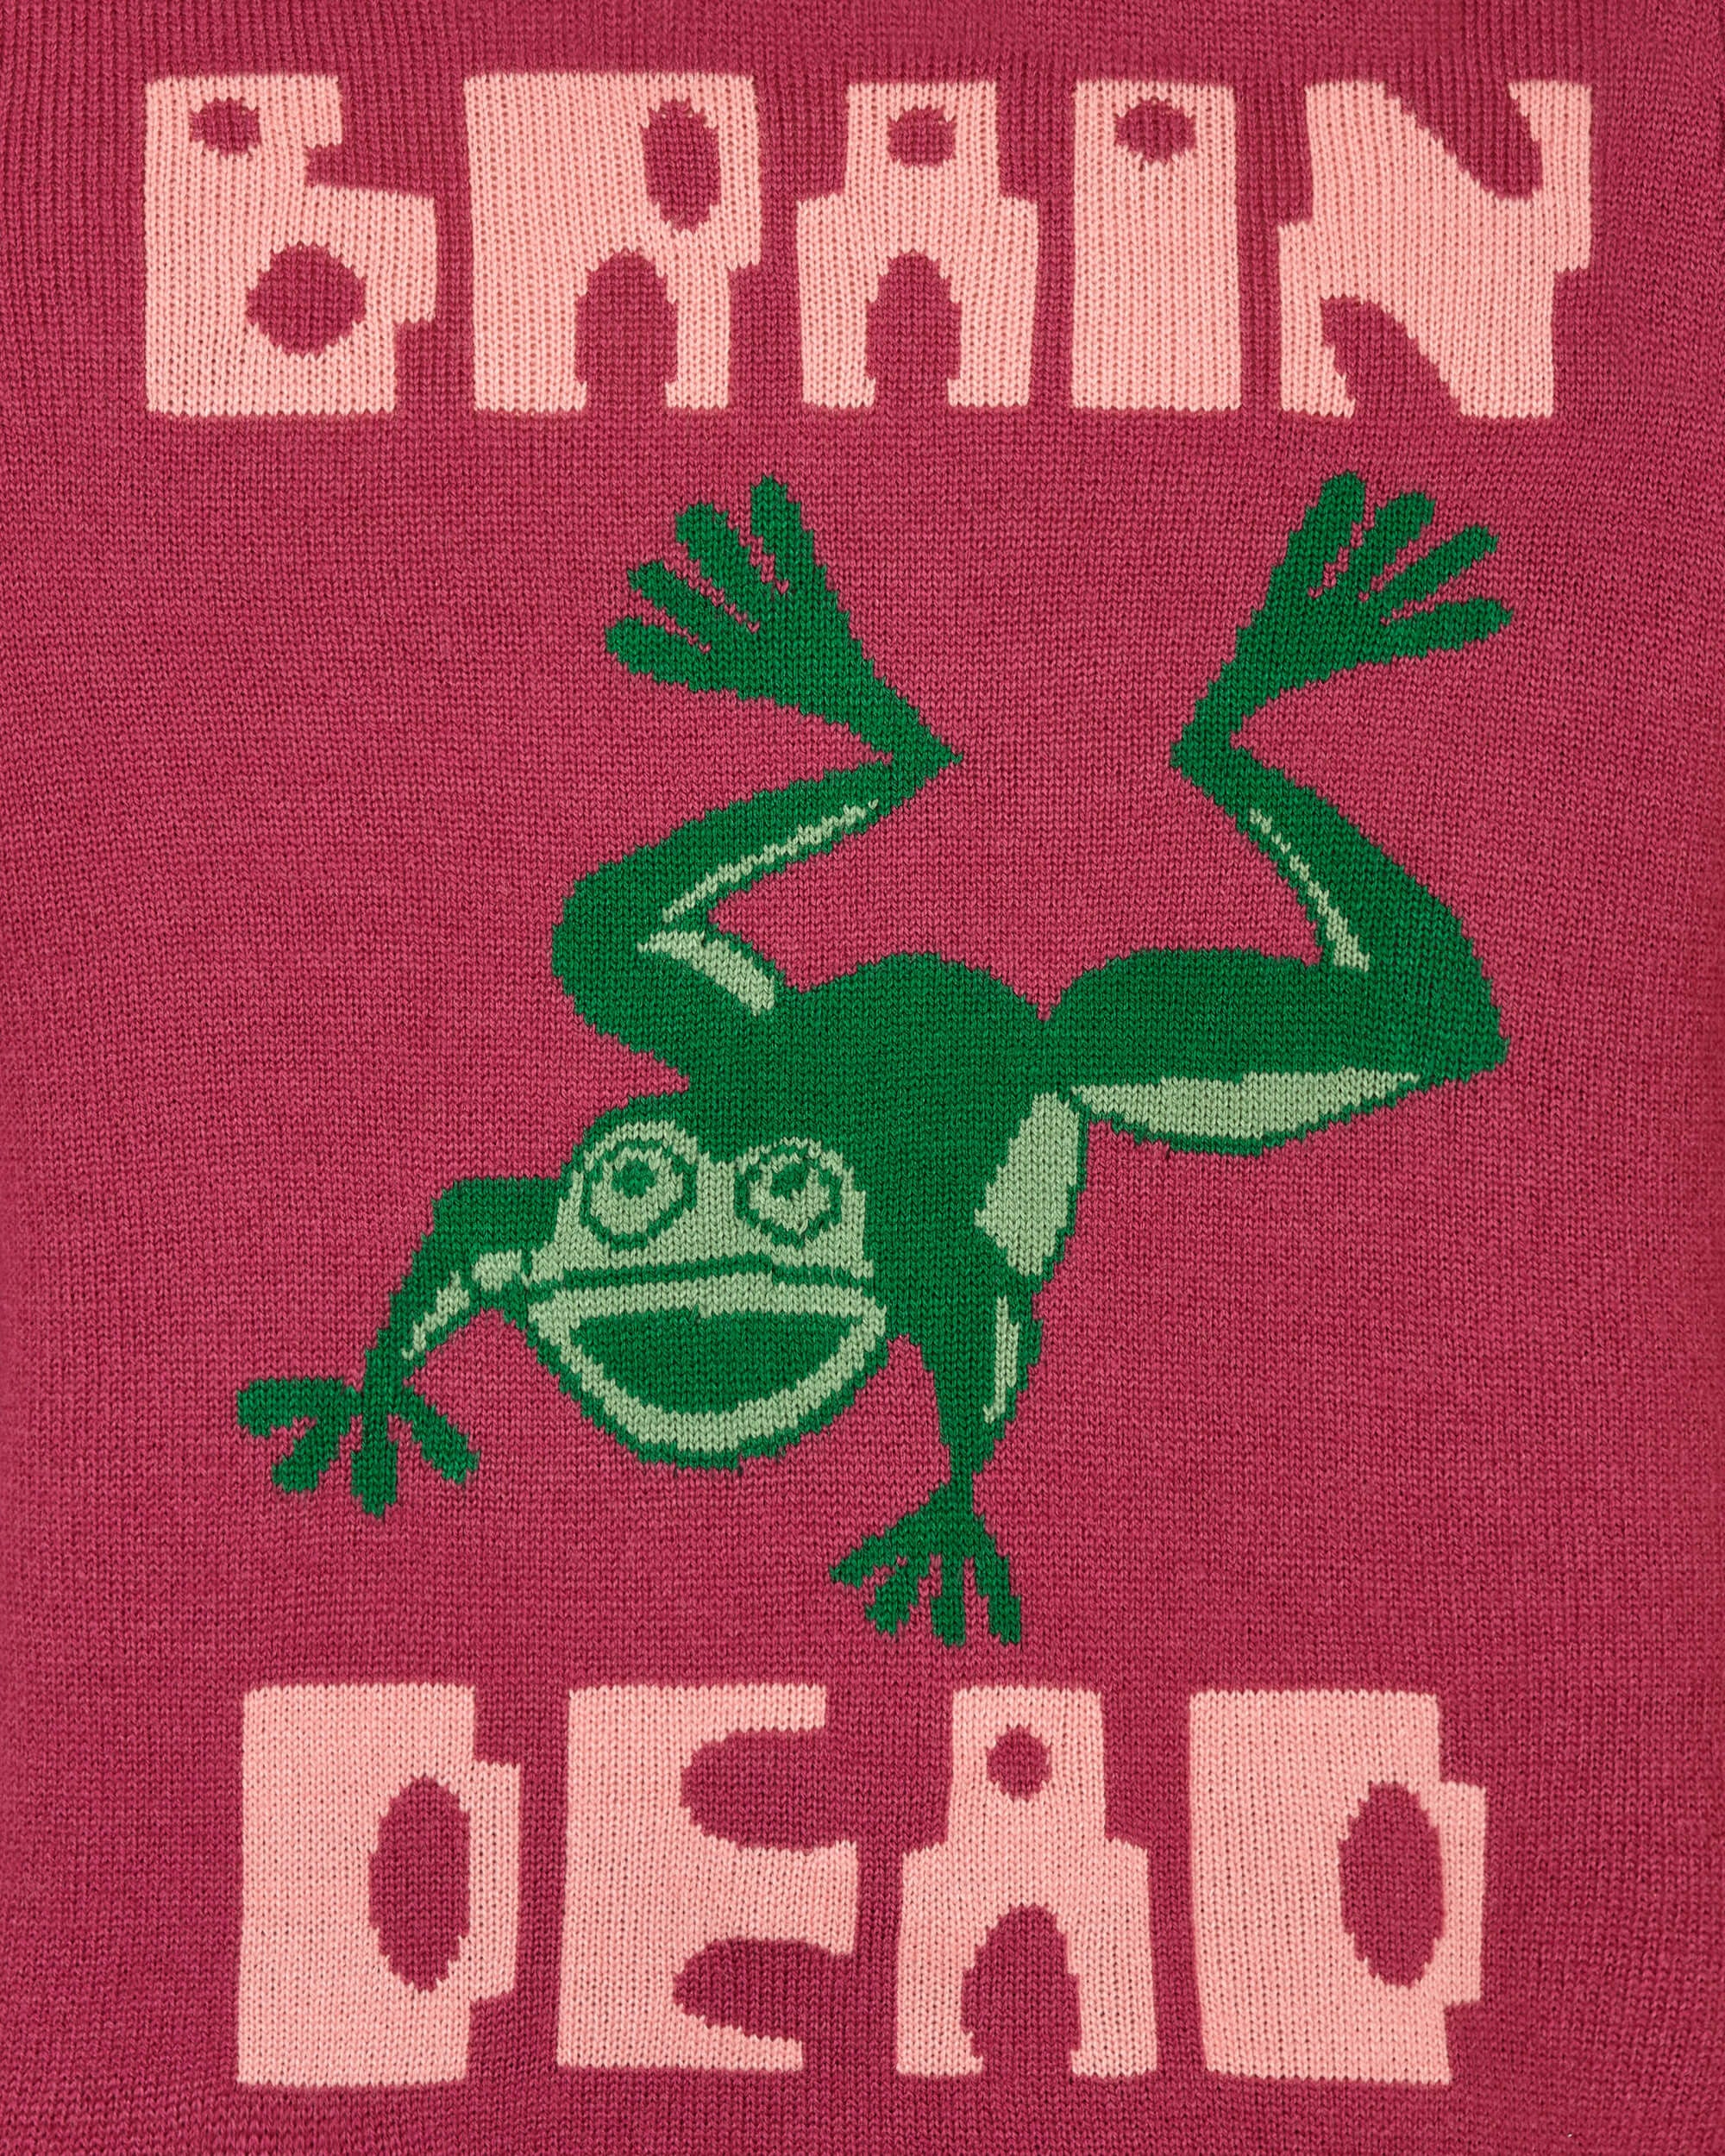 Brain Dead Frogger Fuchsia Knitwears Sweaters BDP22O12002278 PK04